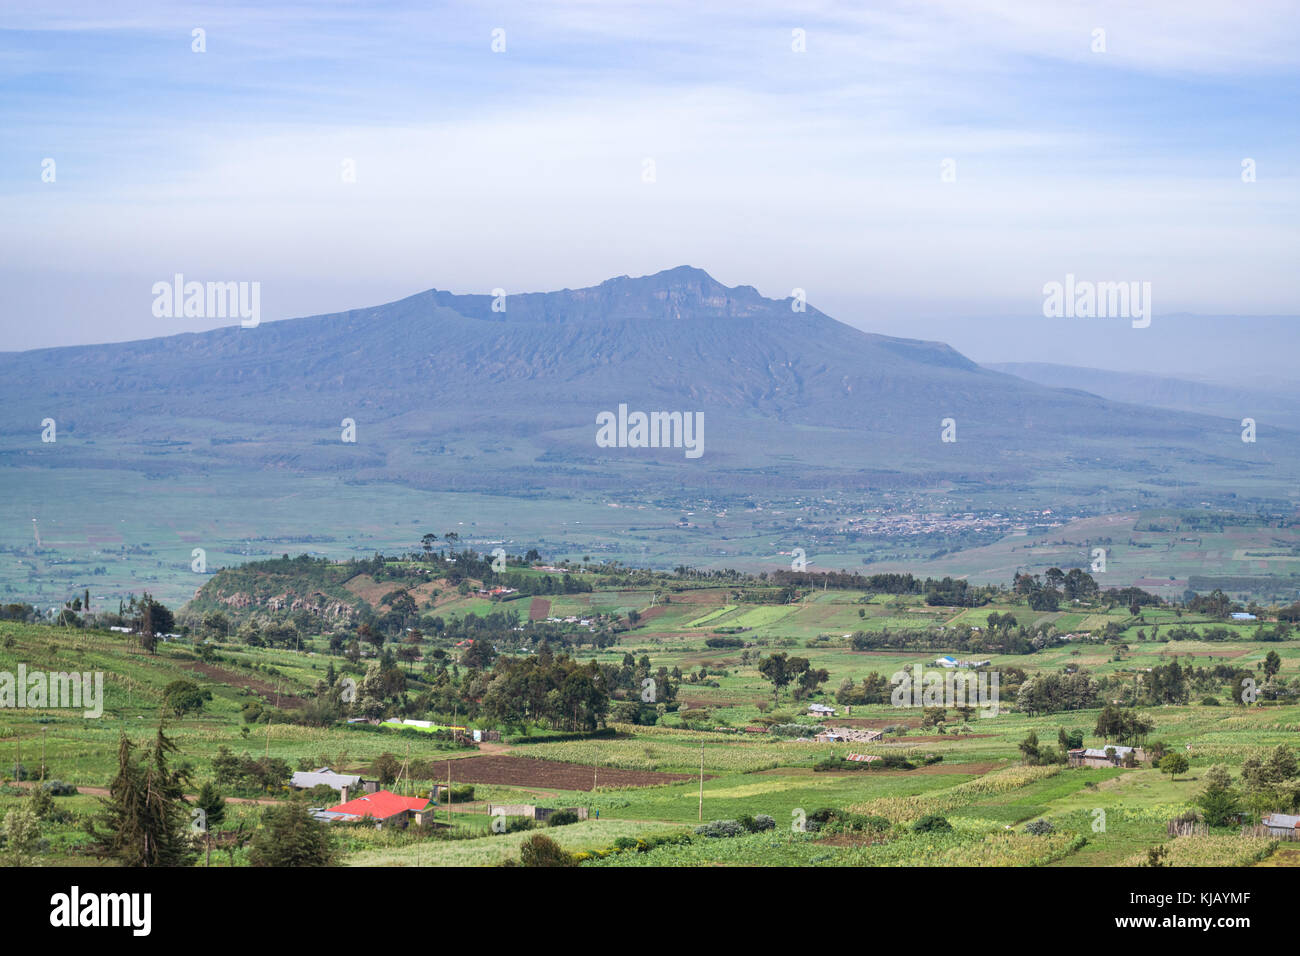 Mount Longonot im fernen Dunst während der Regenzeit mit Ackerland und Landschaft unter, Kenia, Ostafrika Stockfoto